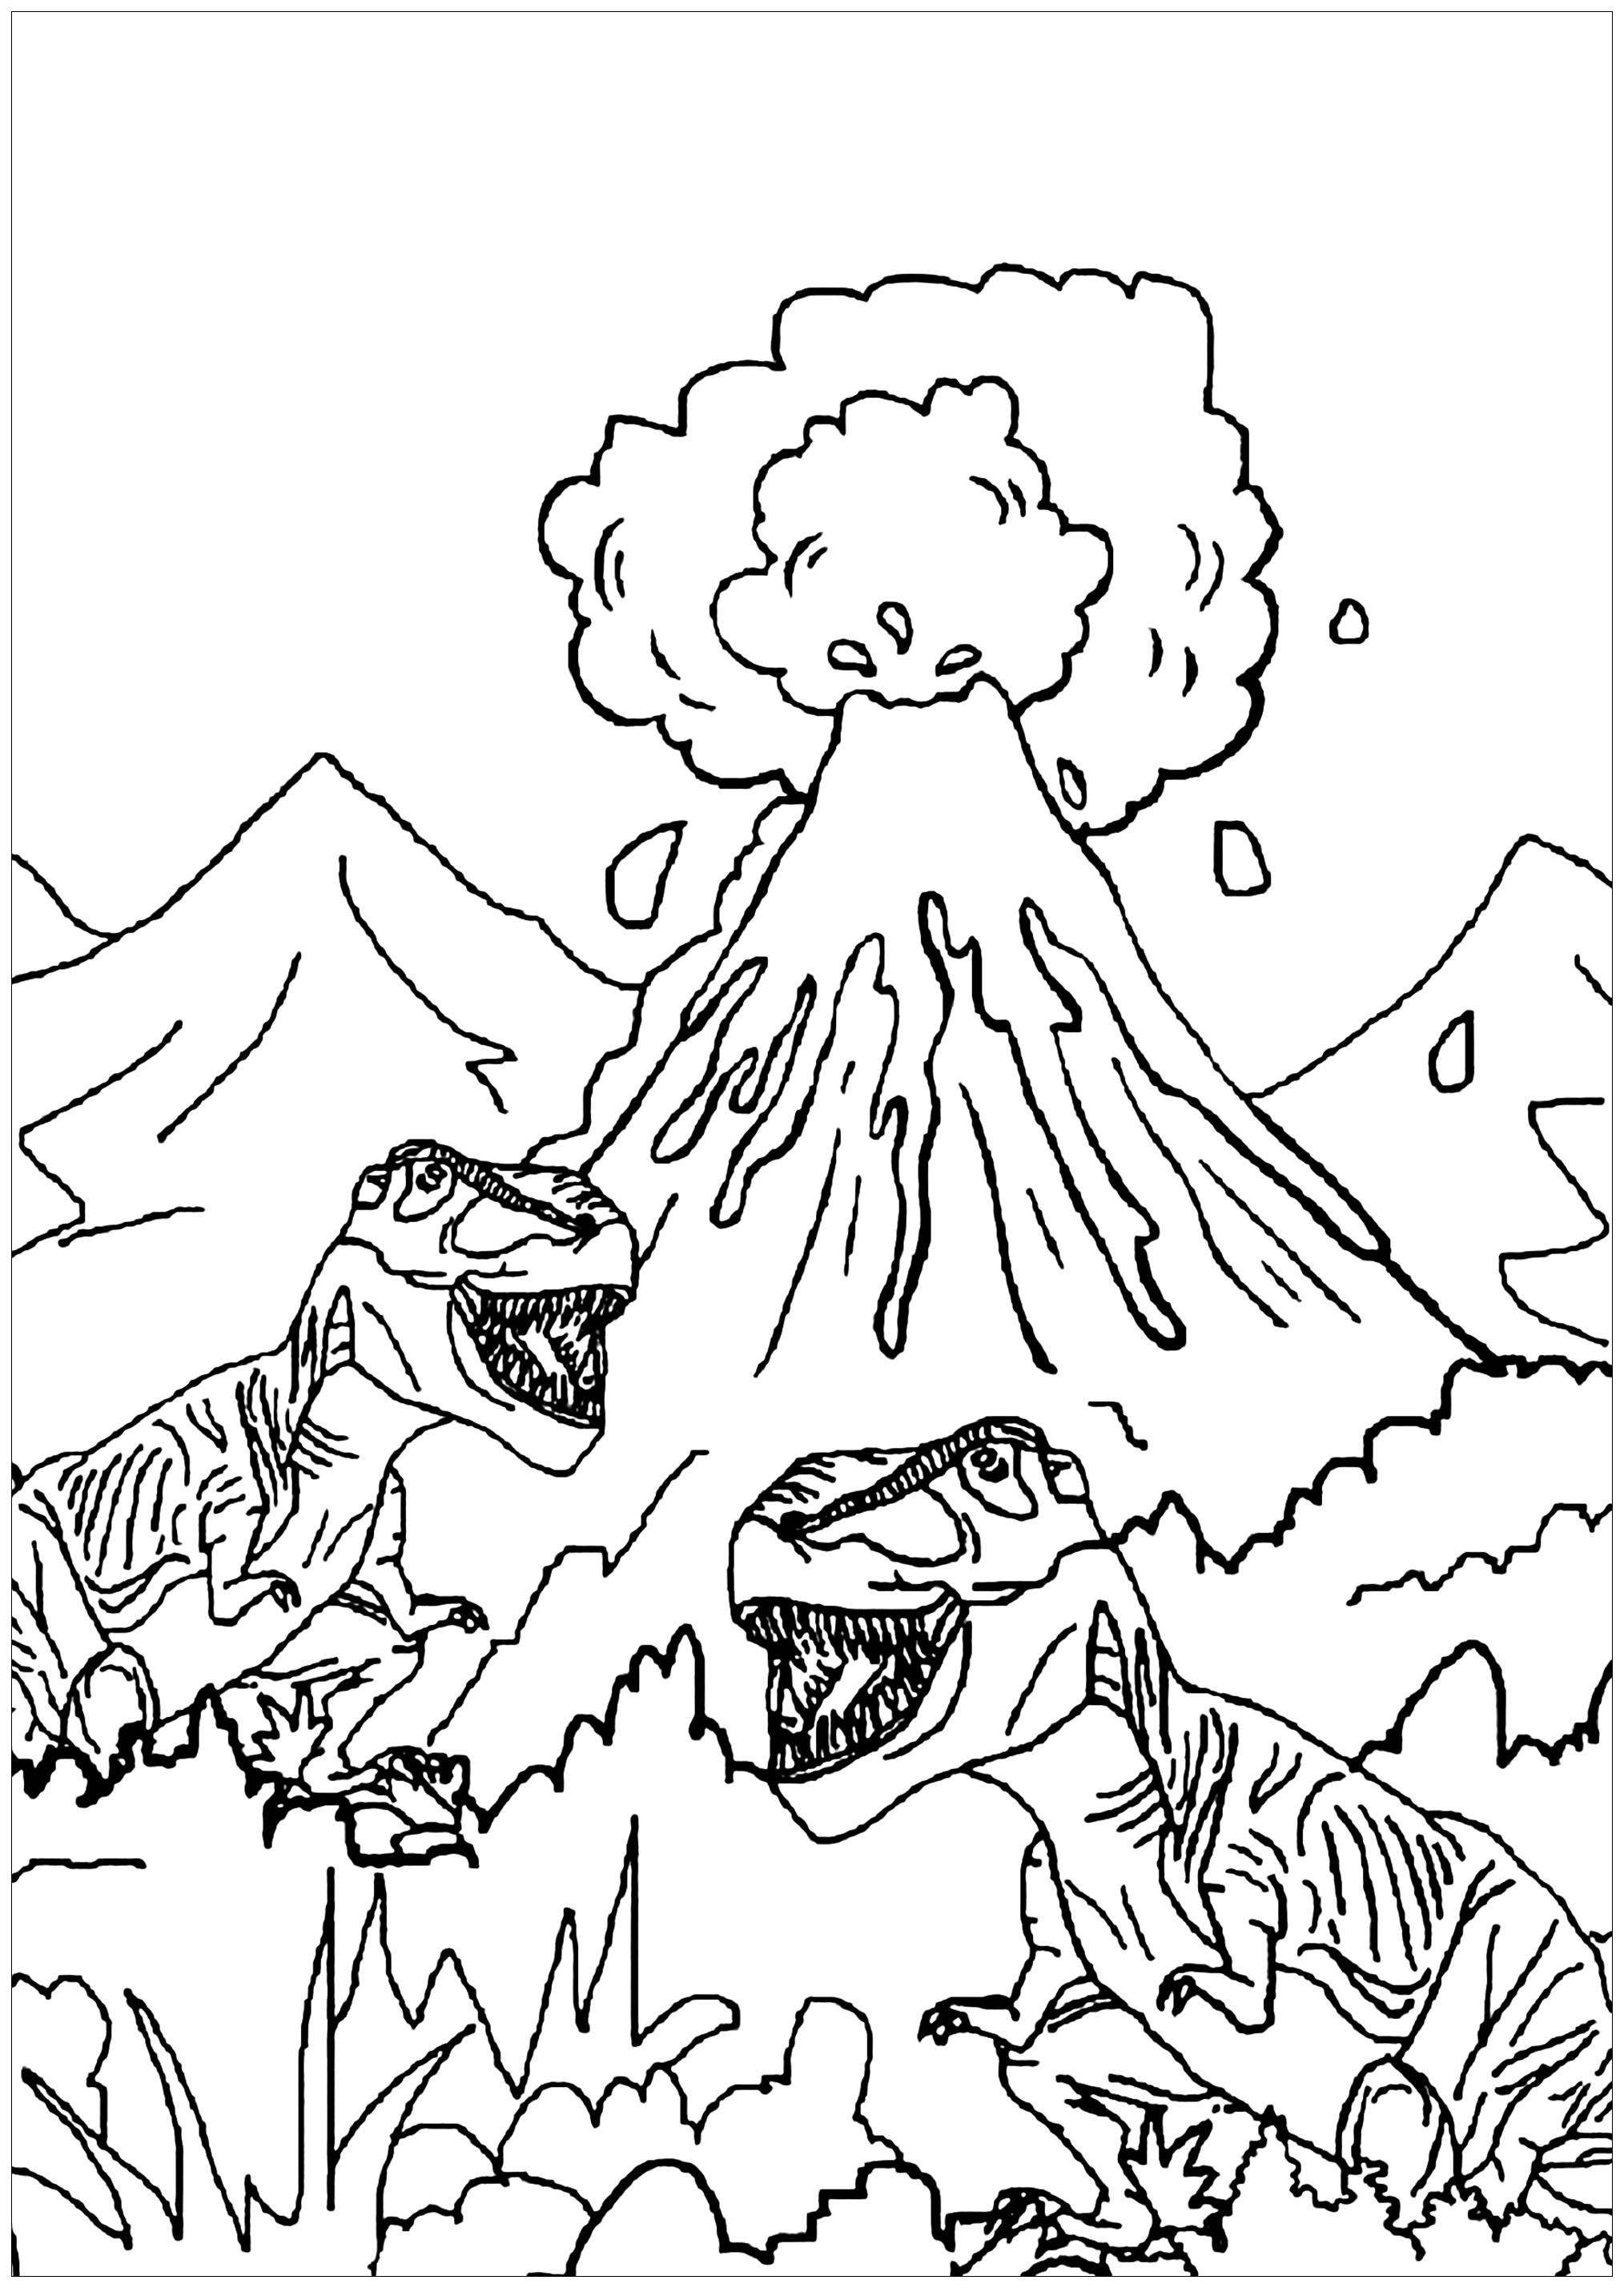 Estos dos tiranosaurios caminan alrededor de un volcán